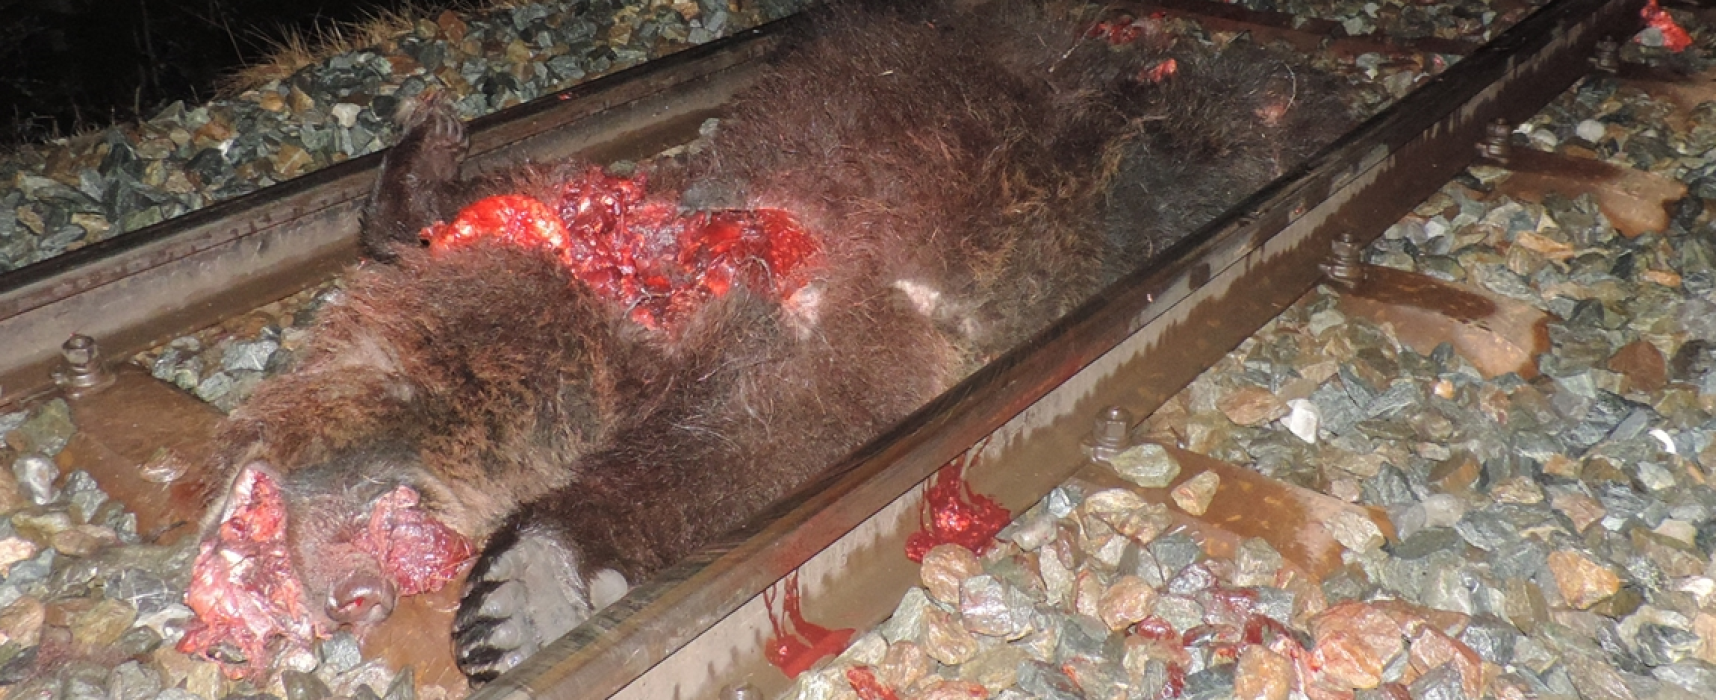 Bär von Zug erfaßt und getötet